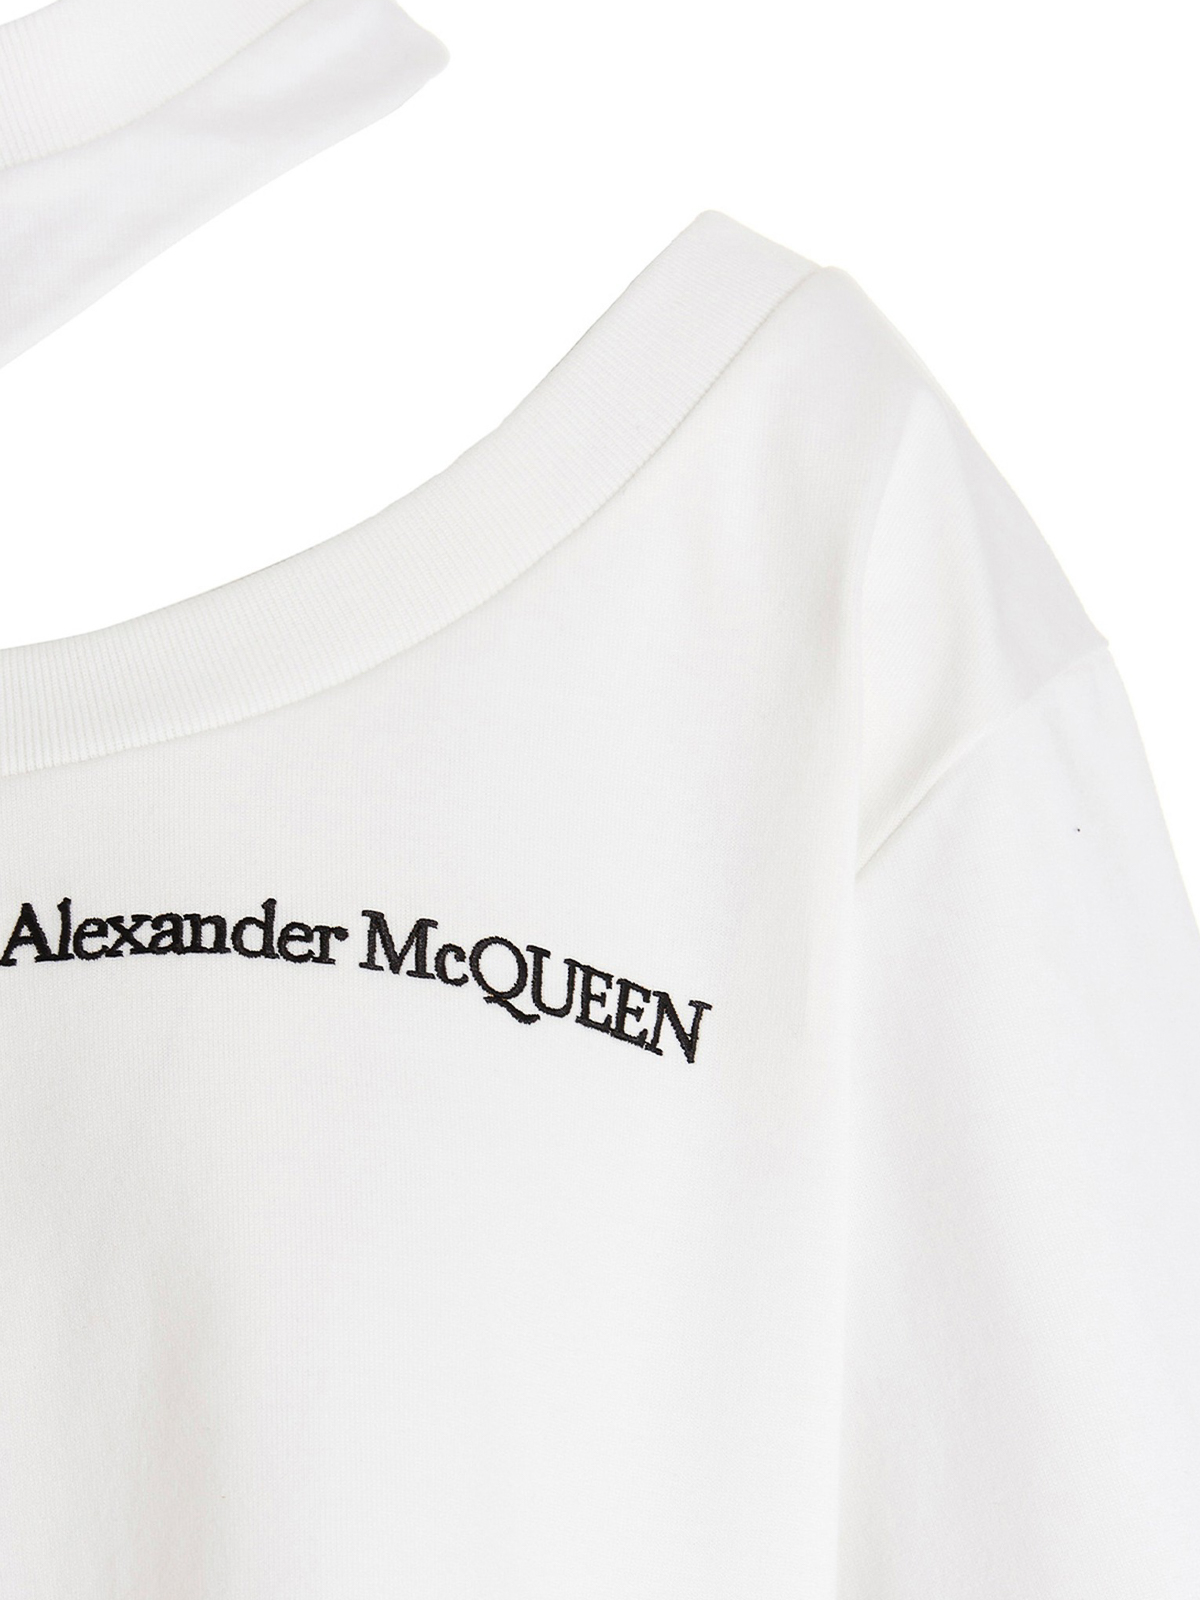 Tシャツ Alexander Mcqueen - Tシャツ - 白 - 733218QLAB79000